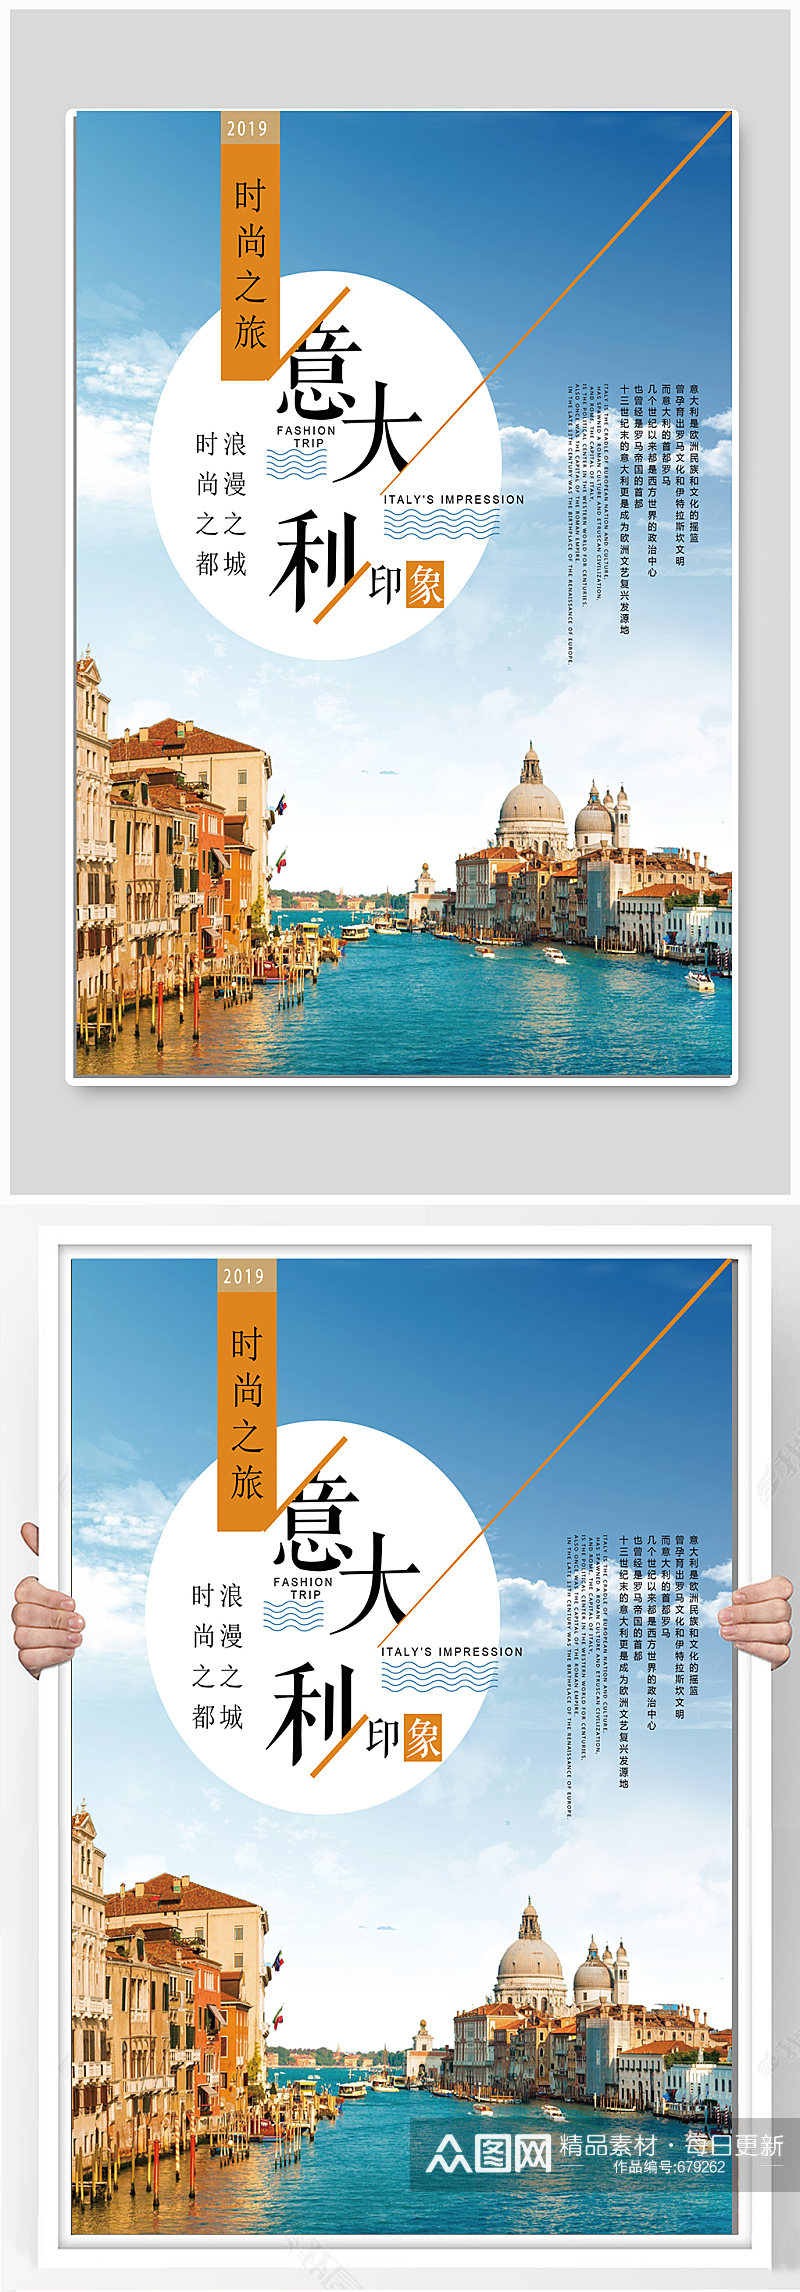 印象意大利旅游海报设计素材